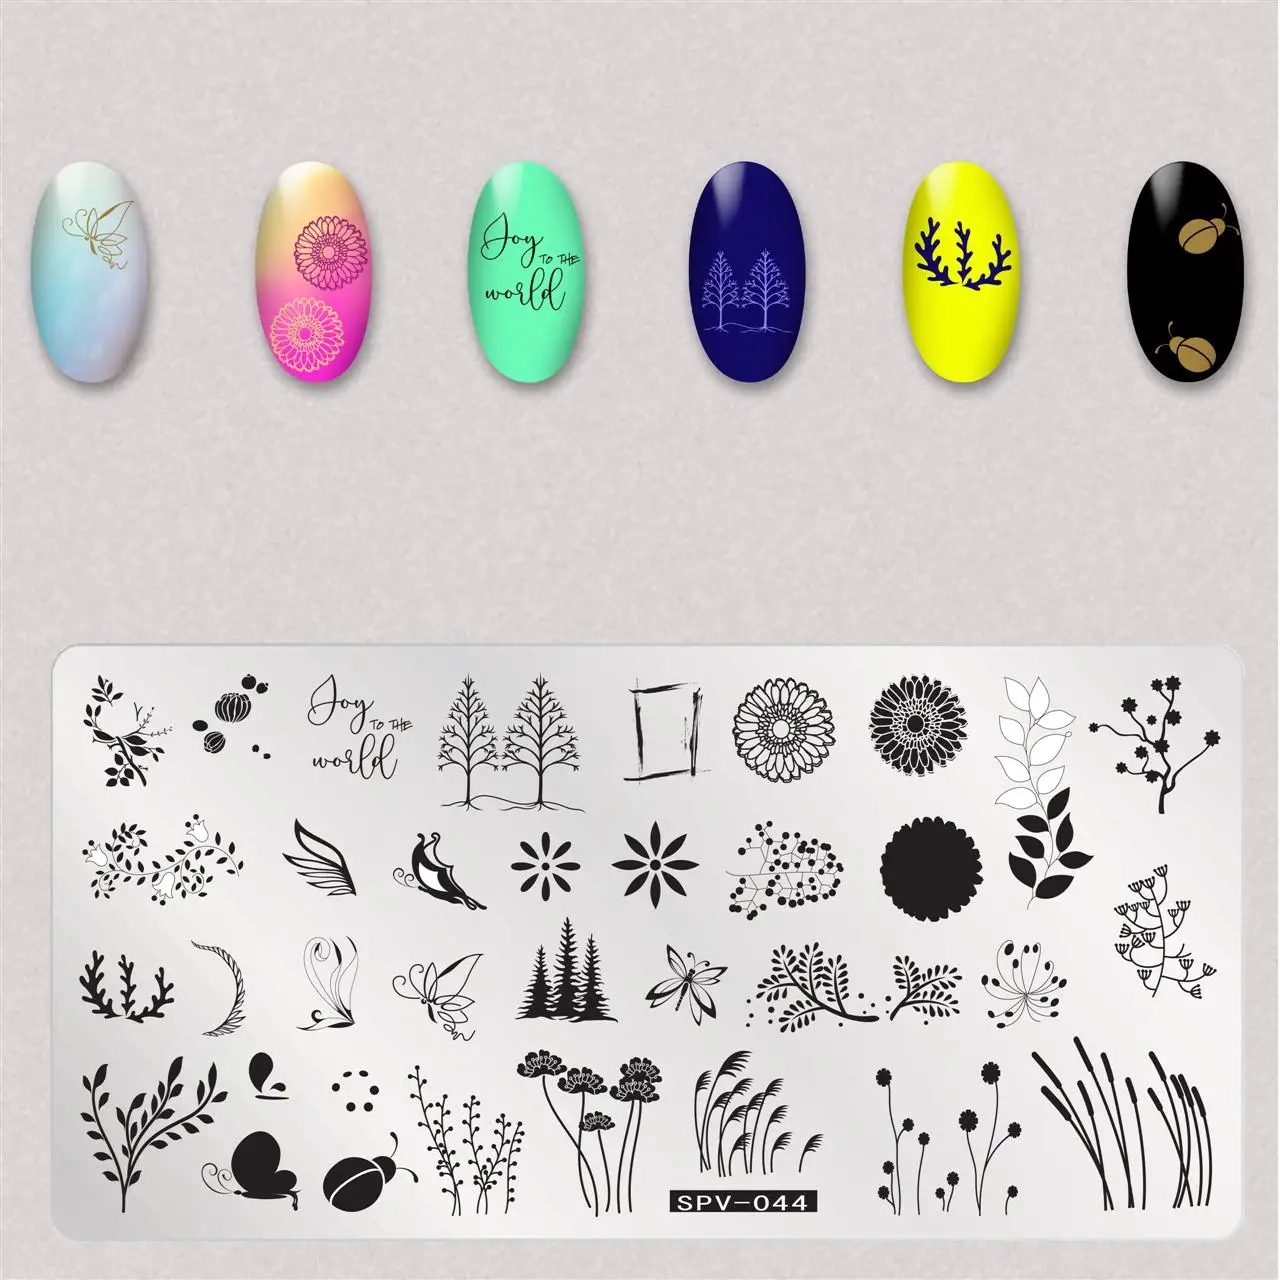 10 шт./лот пластины для штамповки ногтей кленовый лист милые насекомые цветы шаблон для дизайна ногтей штамп шаблон для штамповки изображения пластины для ногтей инструмент